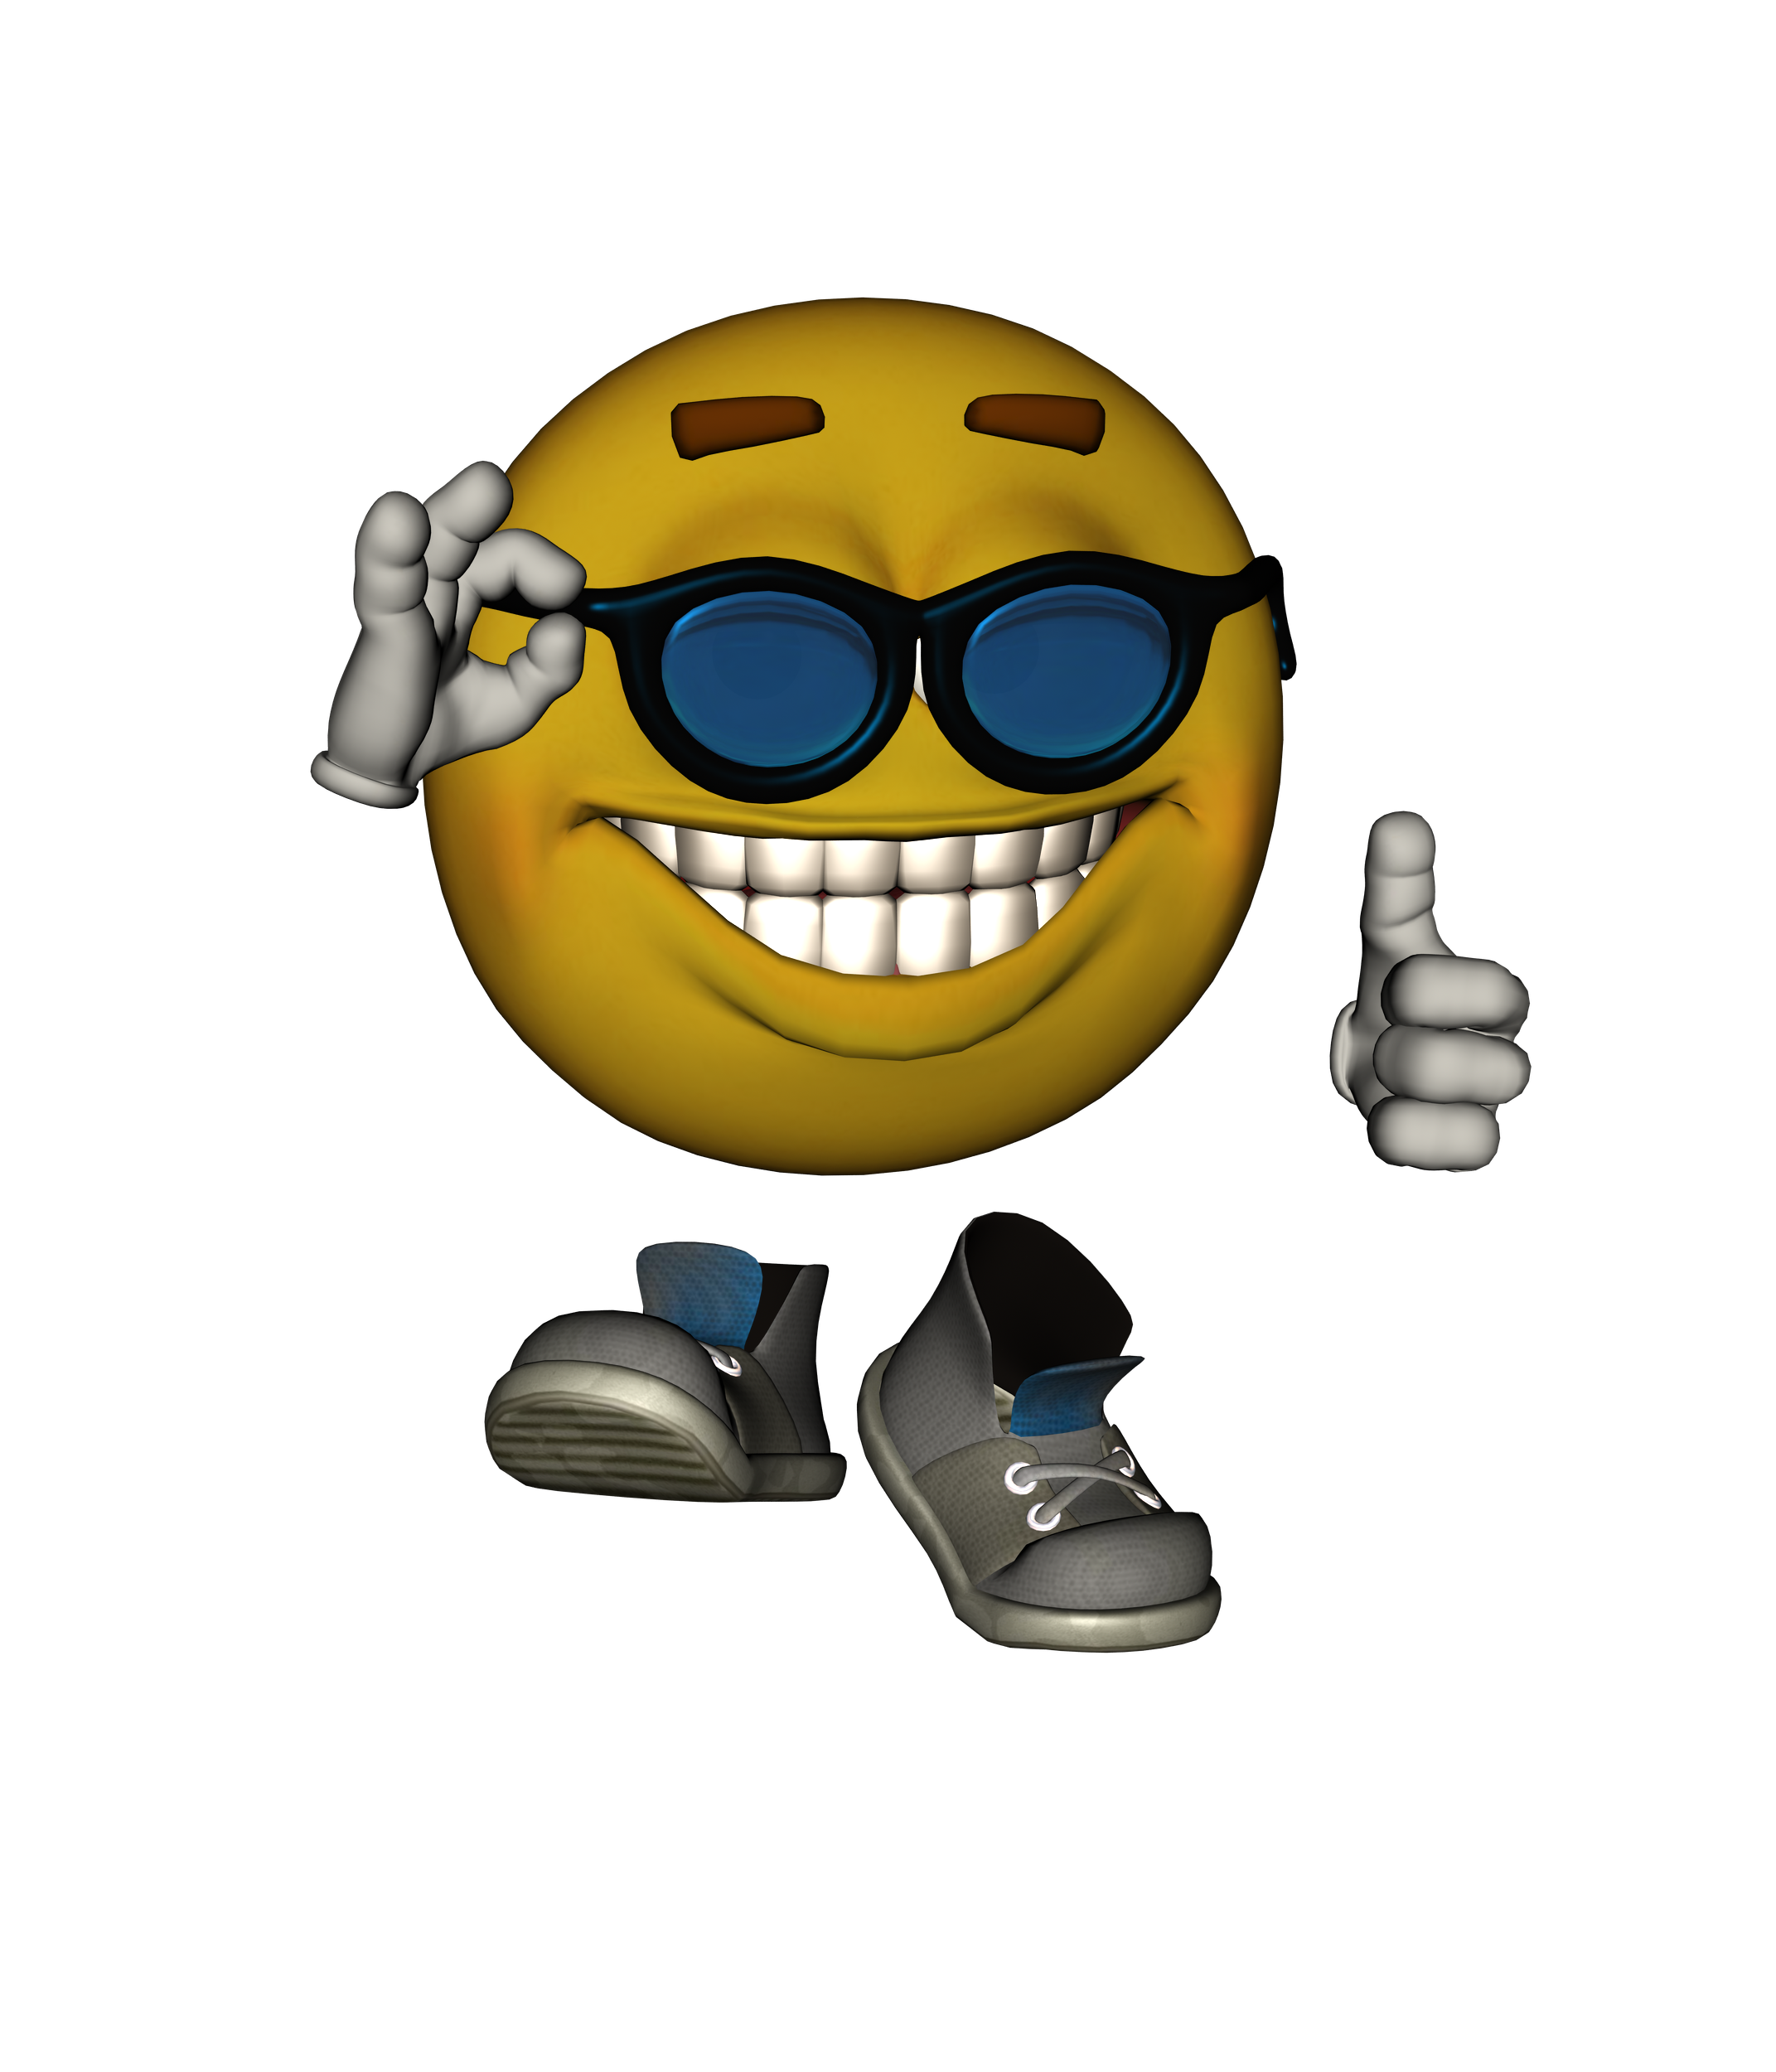 smiling emoji thumbs up meme